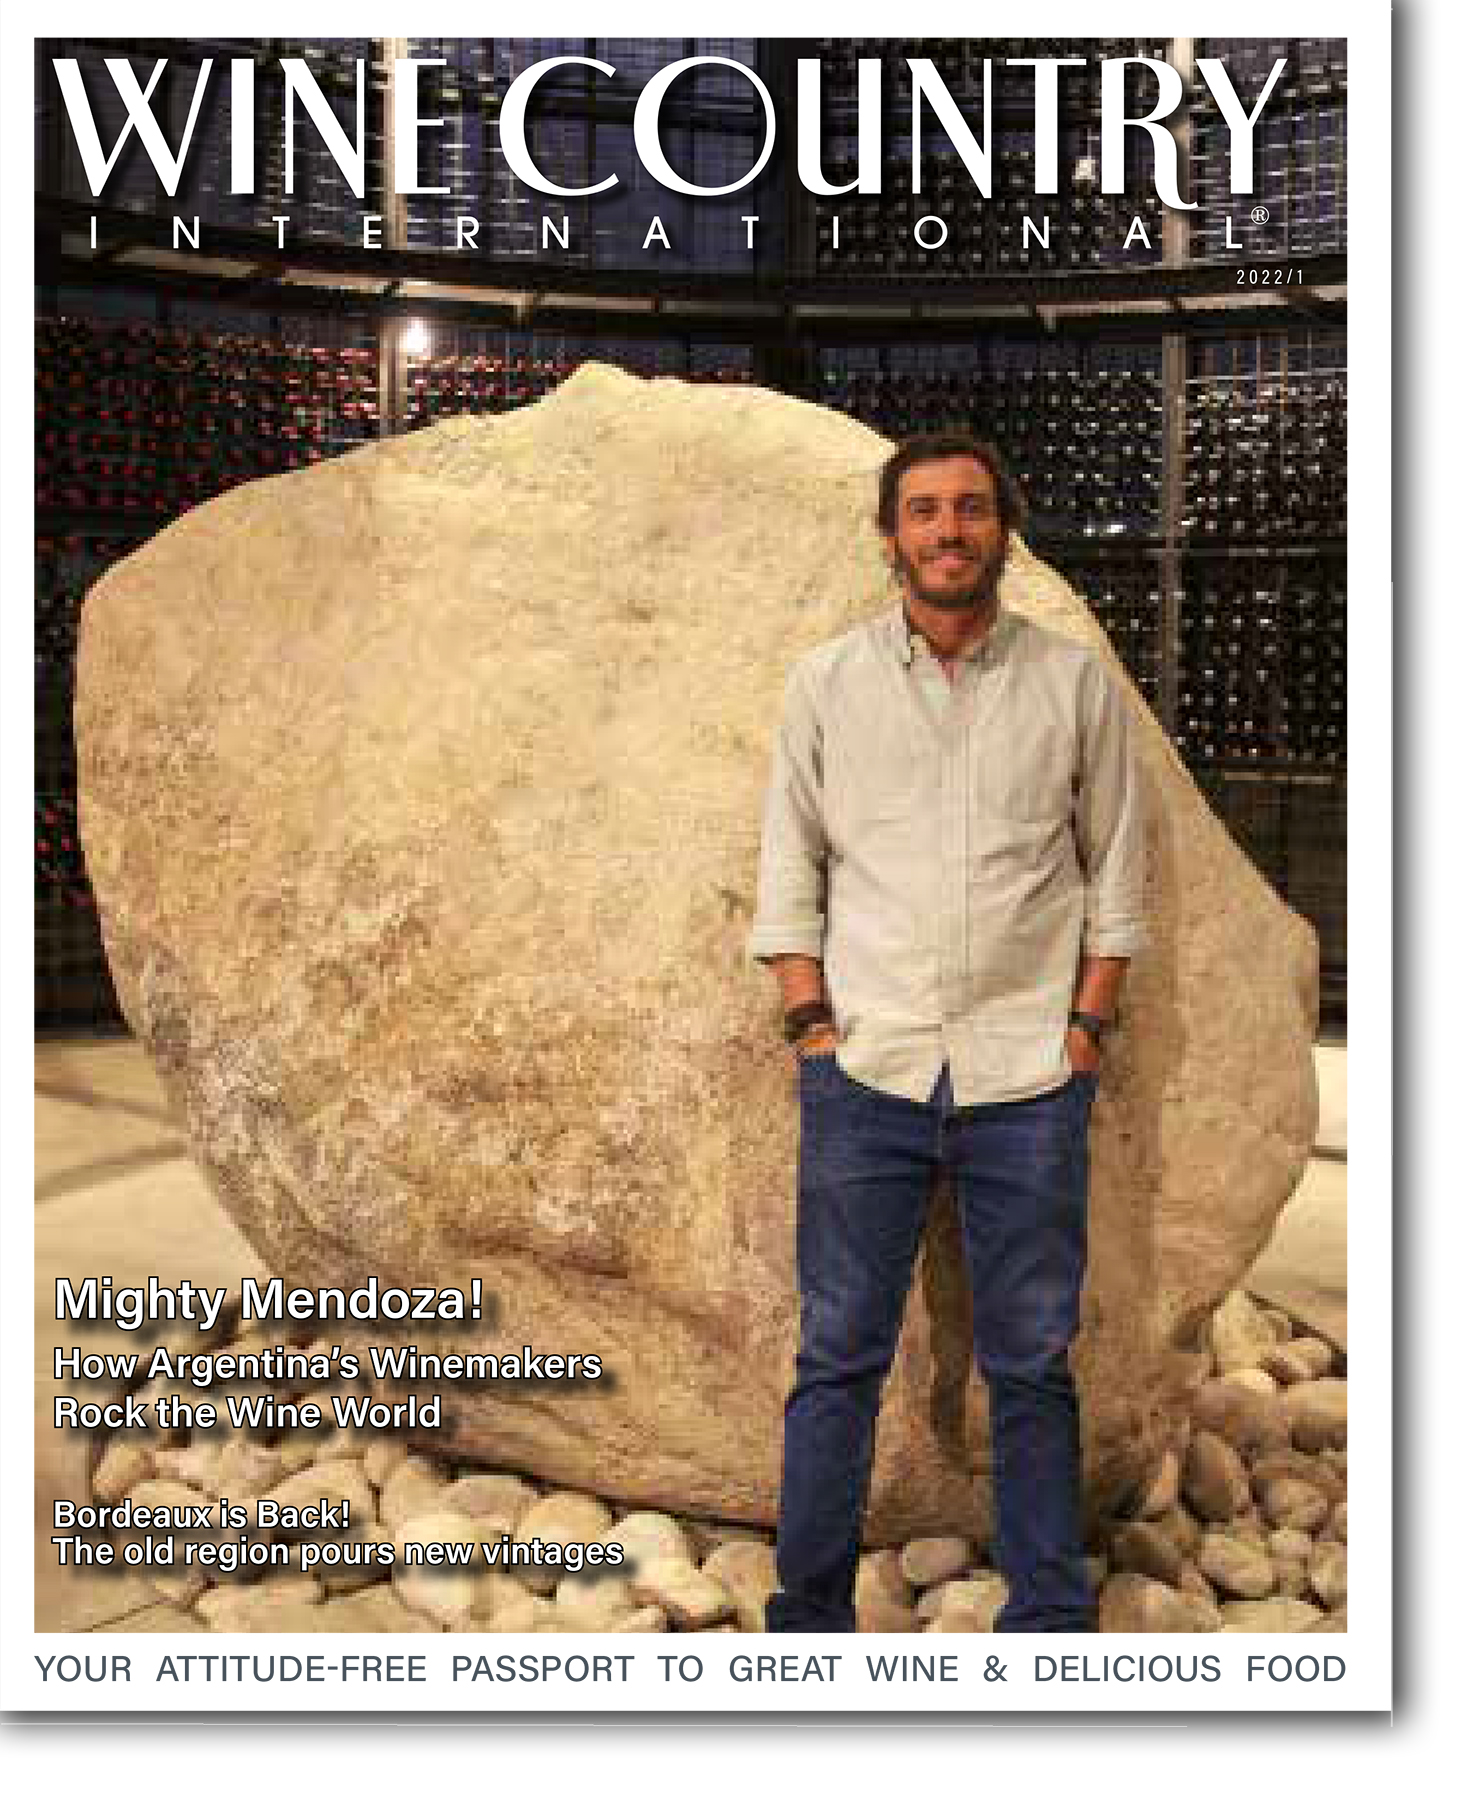 Winecountry_network_2022_V1 Cover